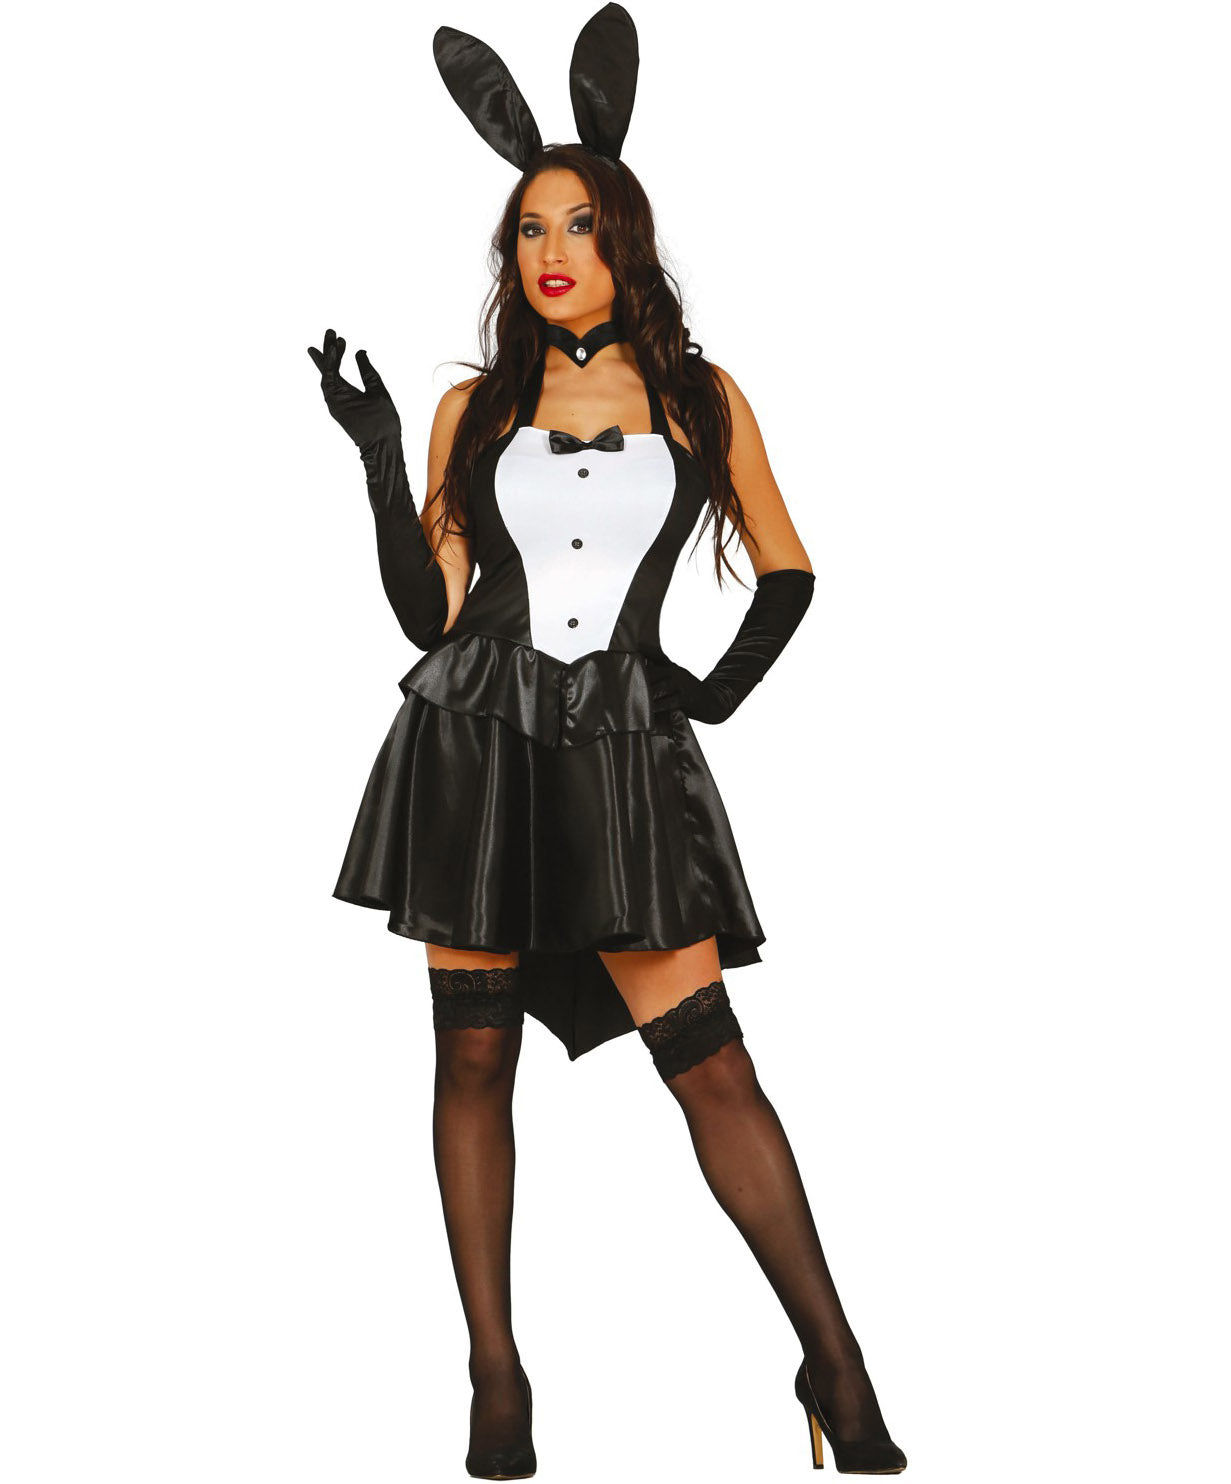 Bunny Girl Costume